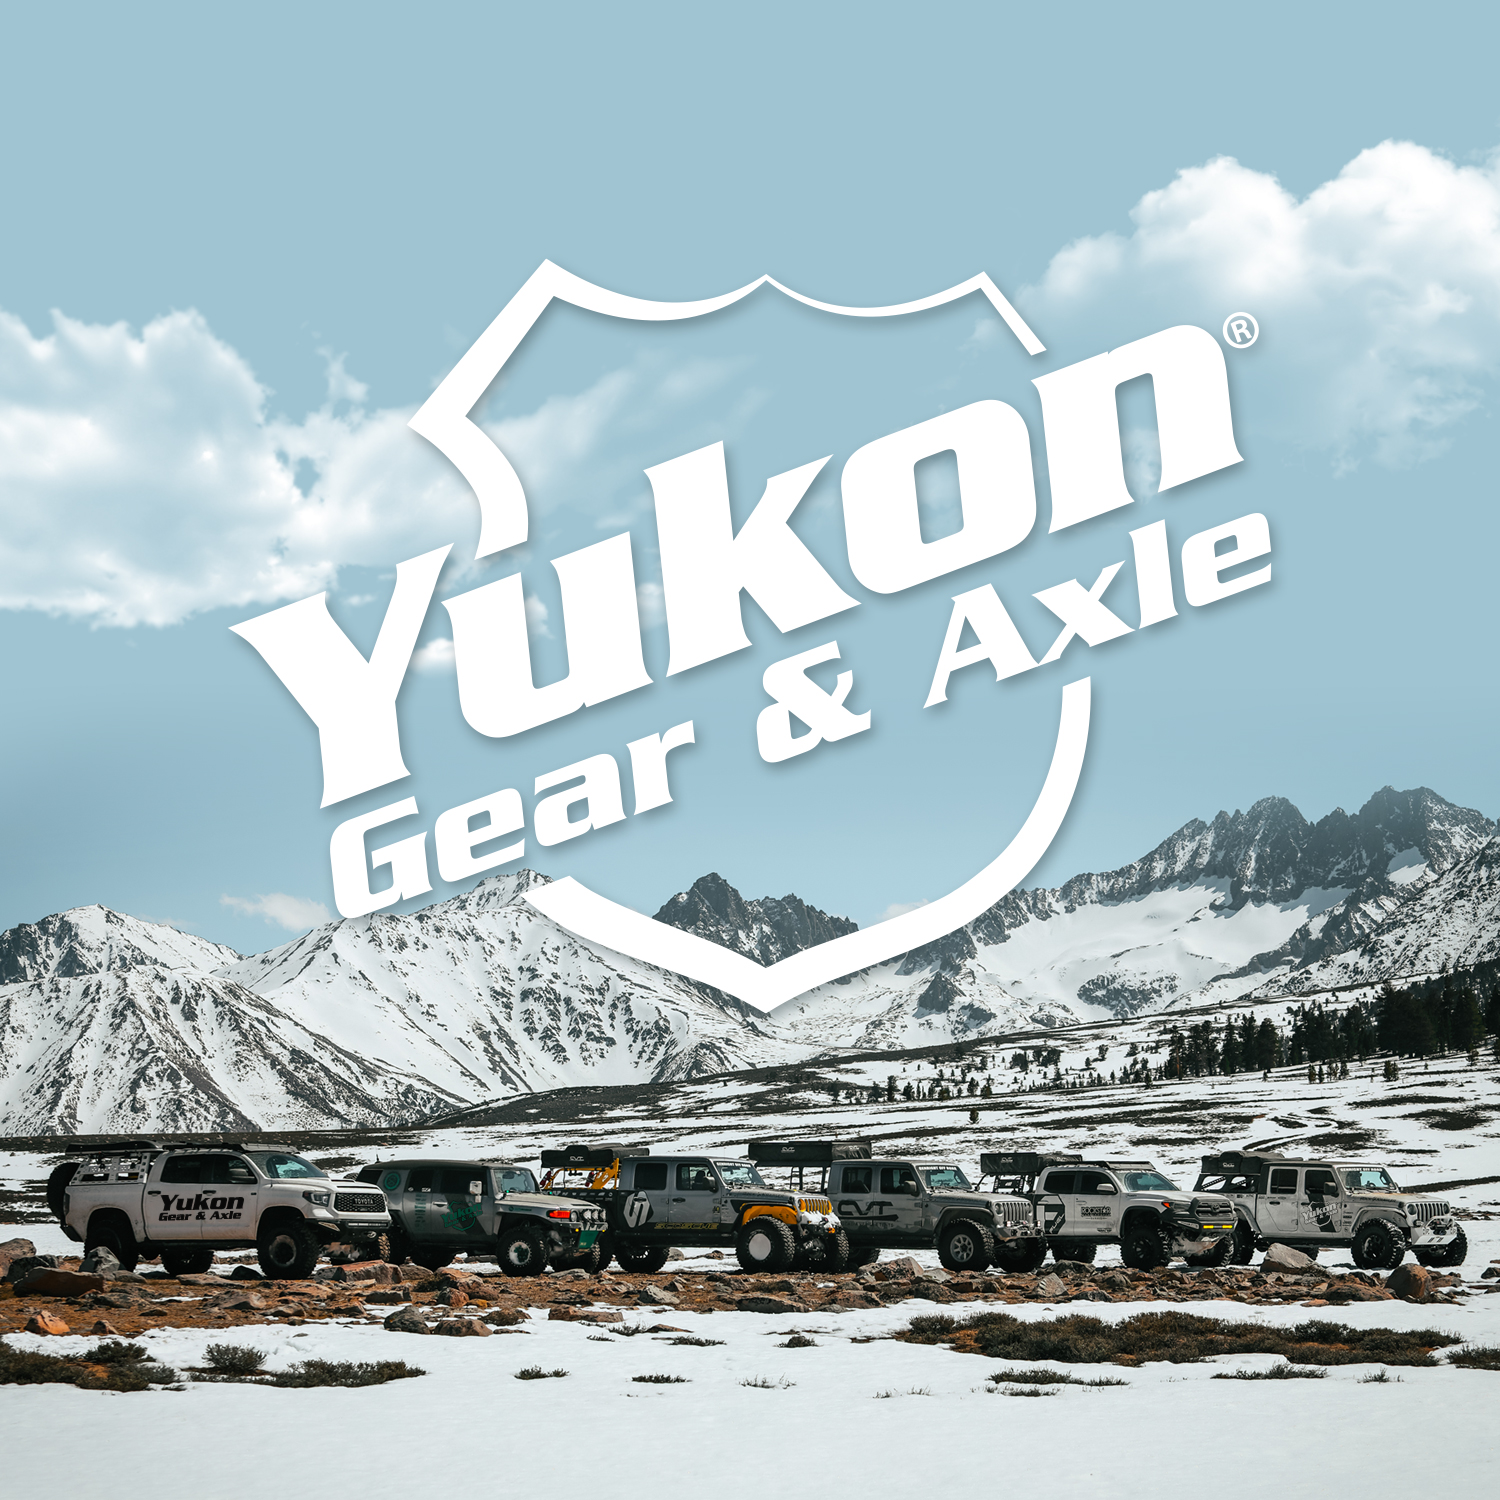 Yukon Chromoly Inner Front Axle for Dana 44 Diff, 30 Spline, LH, 16.96” Long 